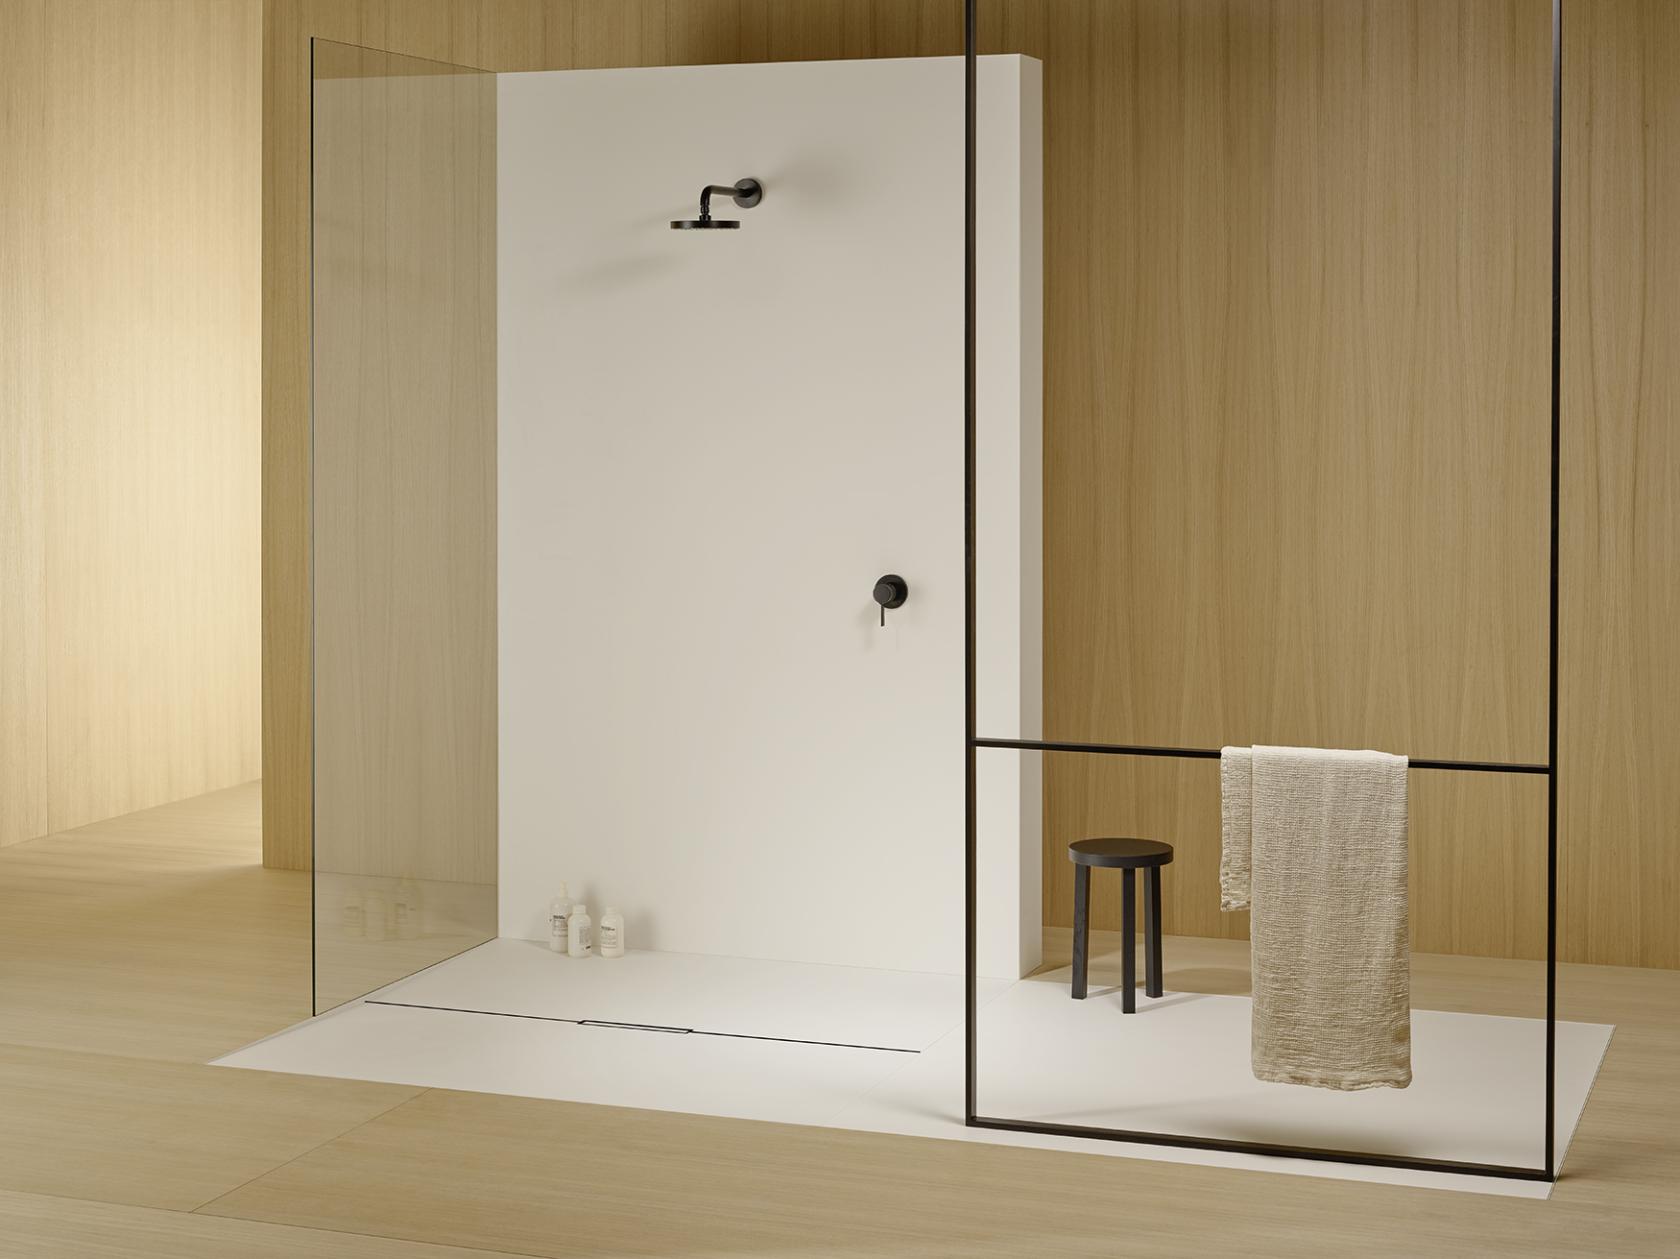 CeraFloor Individual es la canaleta de ducha sofisticada para instalación en el suelo. Destaca por su exquisito diseño y por disponer de la más avanzada tecnología.